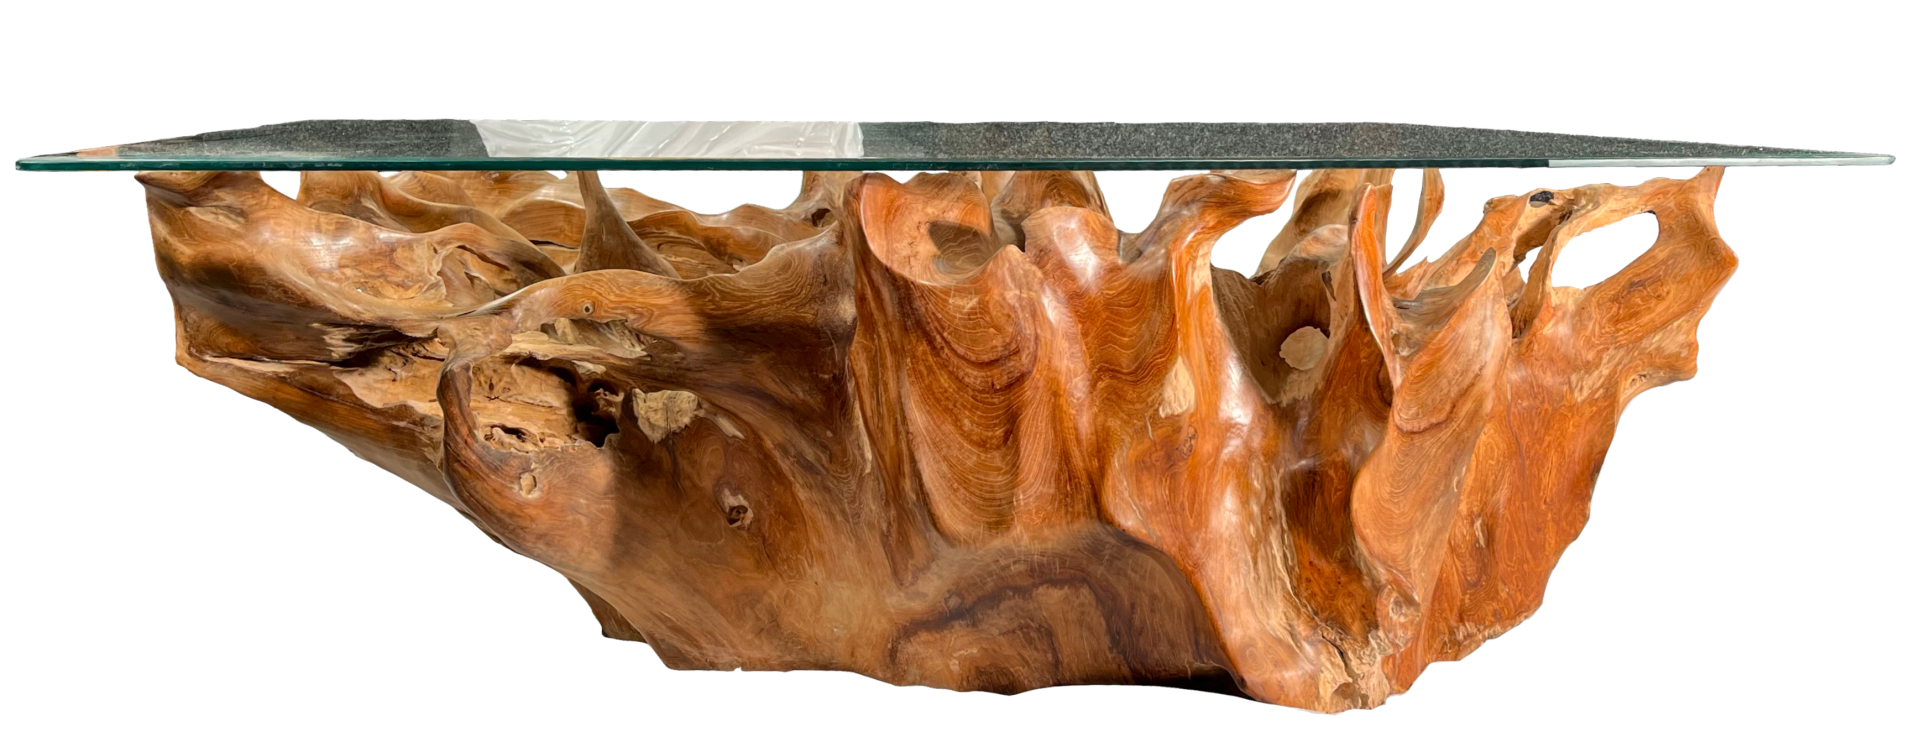 FaKOPA s. r. o. BRANCH - stůl z kořene teaku 120 x 80 cm, teakový kořen